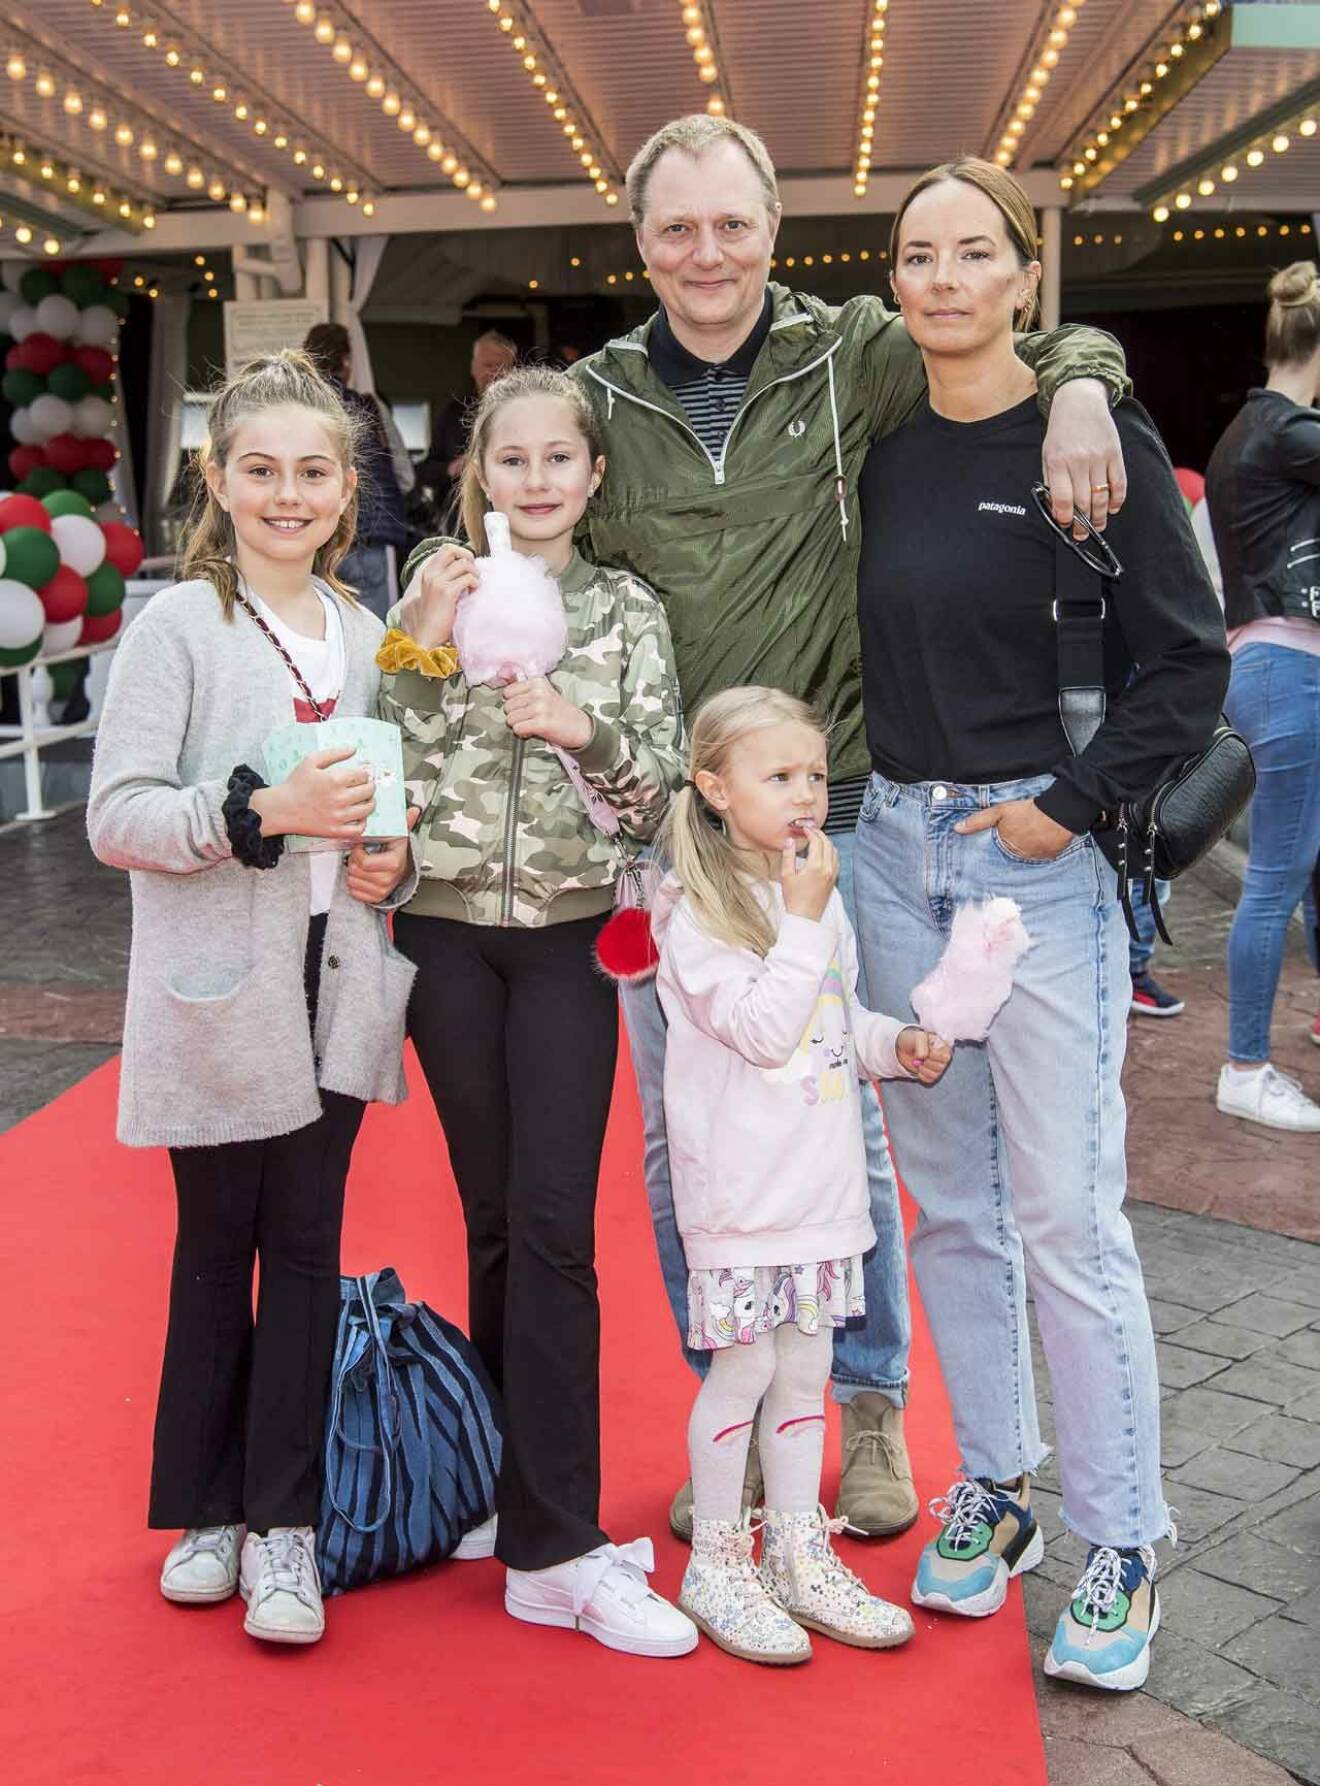 Musikern Magnus Carlson med frun Elin och barnen Ella, i kamouflage-jacka, och Nina längst fram. Kompisen Nadja längst ut till vänster följde med.